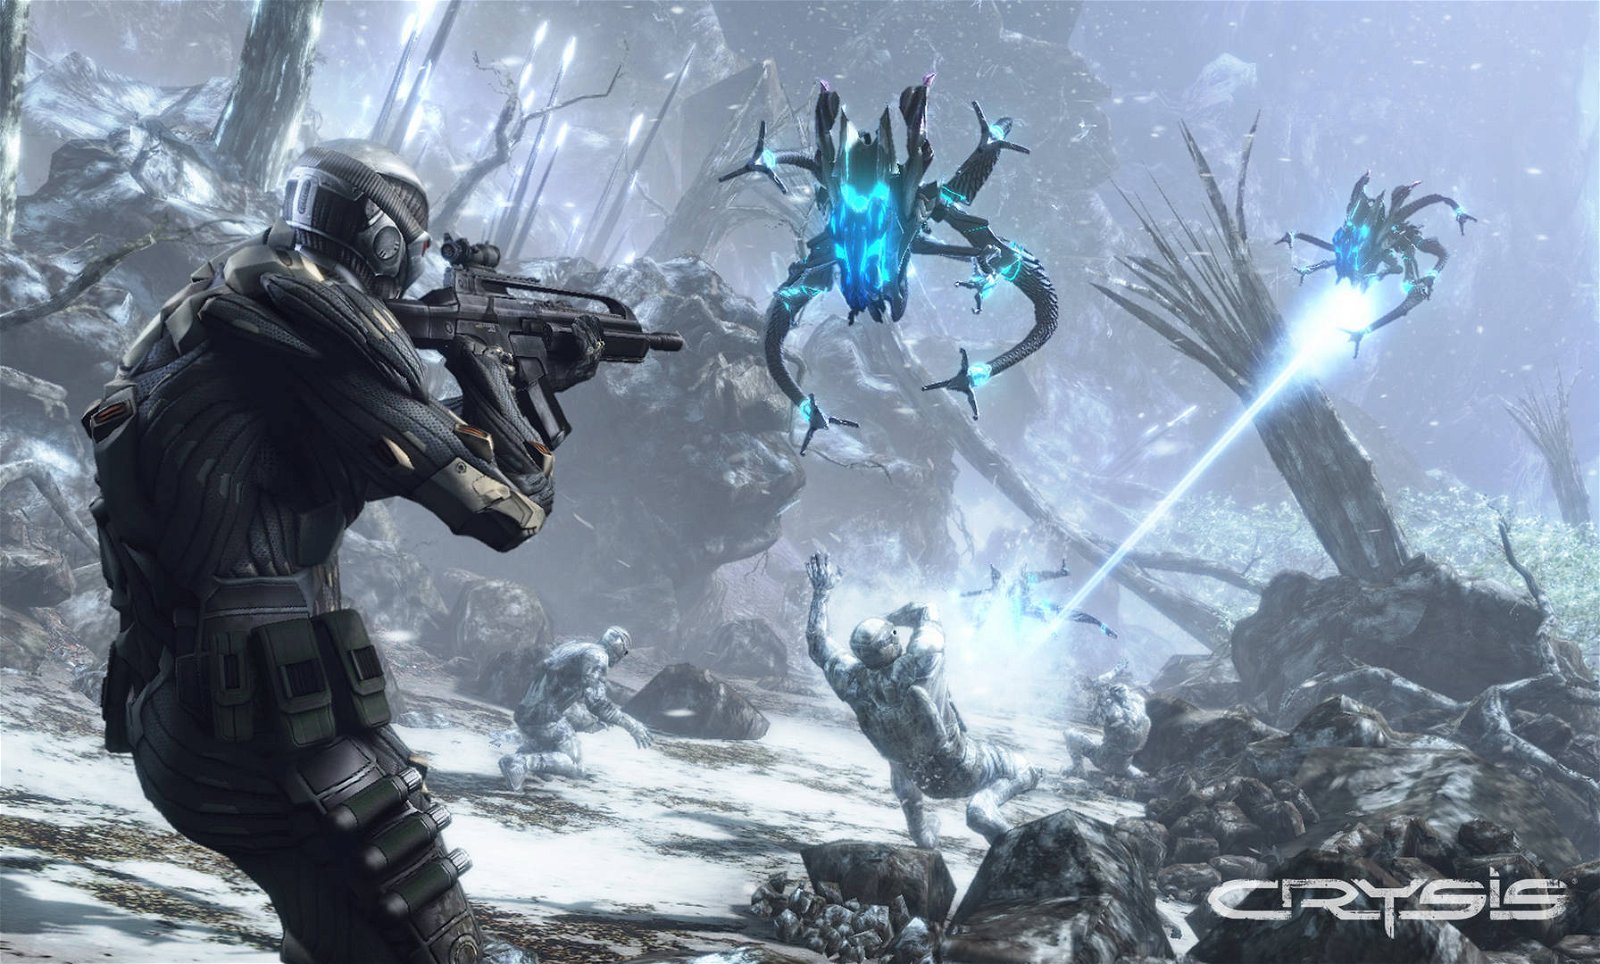 Immagine di Crysis: possibile remaster in arrivo su PS5 e Xbox Series X?